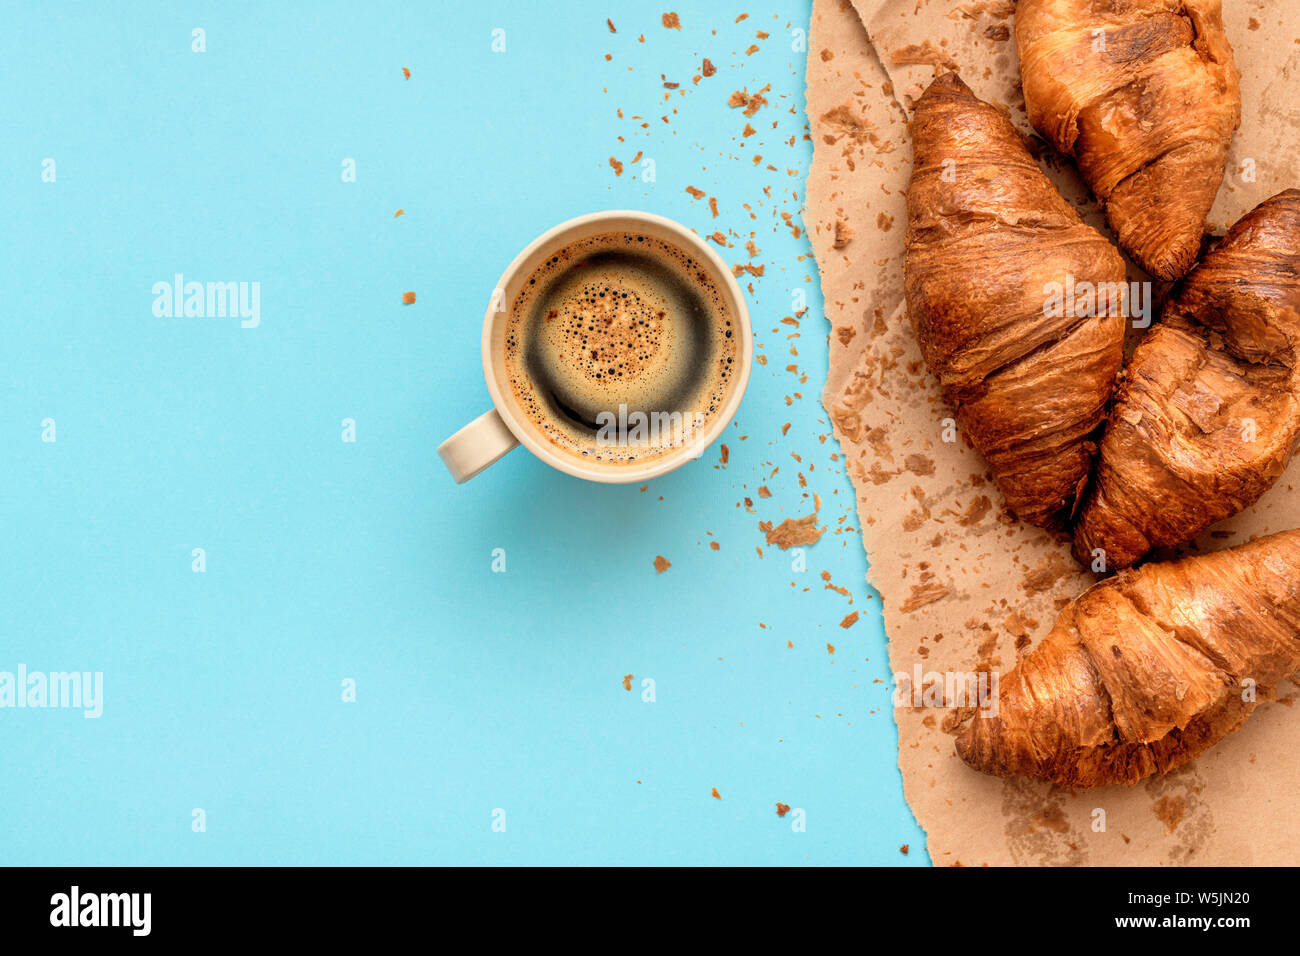 Café et croissants pour le petit-déjeuner, vue de dessus de boisson chaude dans la tasse à café et pâtisserie savoureuse Banque D'Images